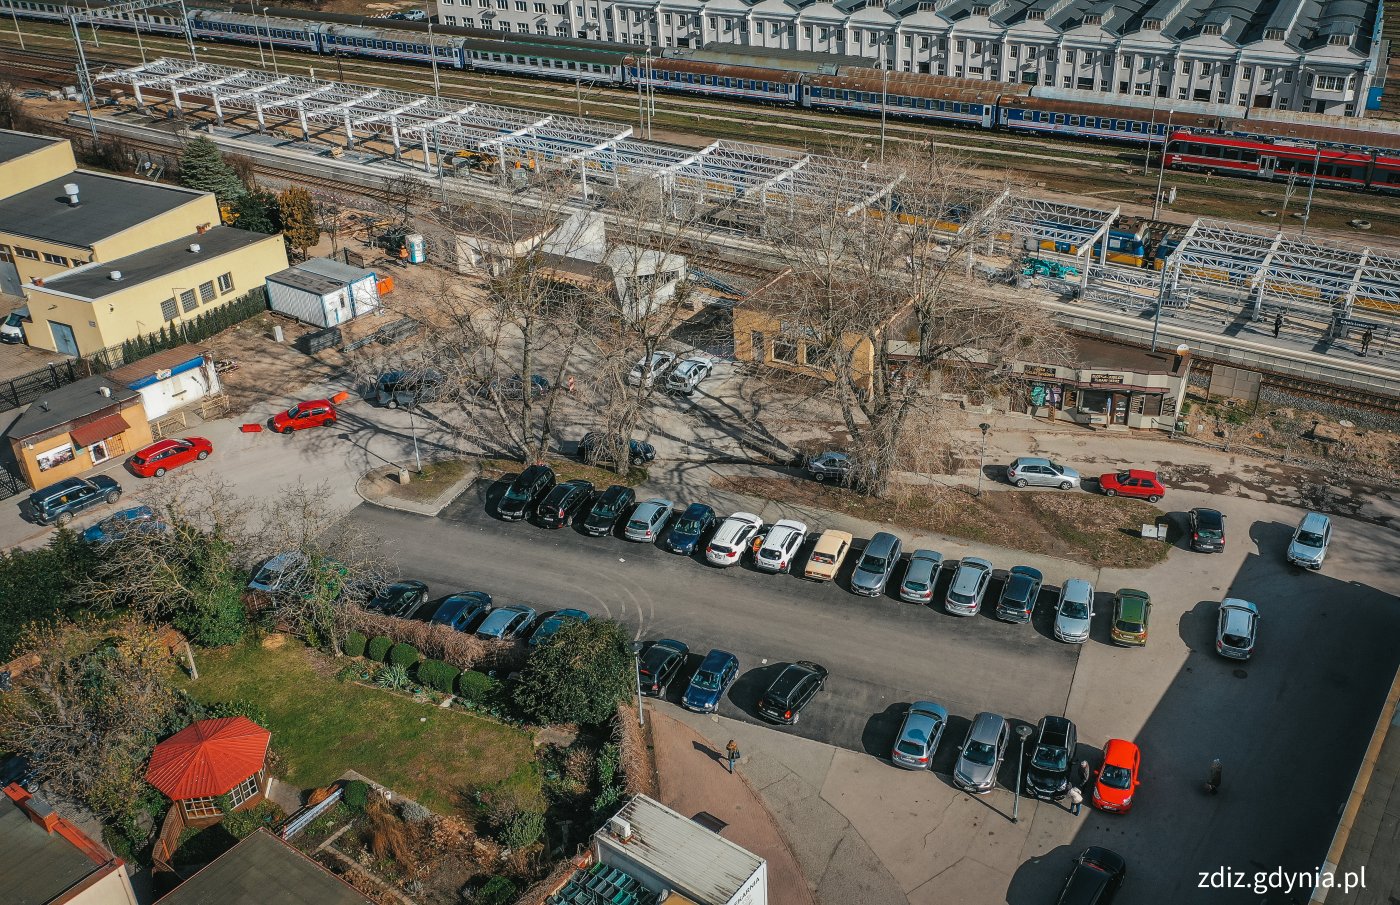 widok z góry na teren parkingu przy stacji SKM, widoczne zaparkowane pojazdy, tory kolejowe, budynki